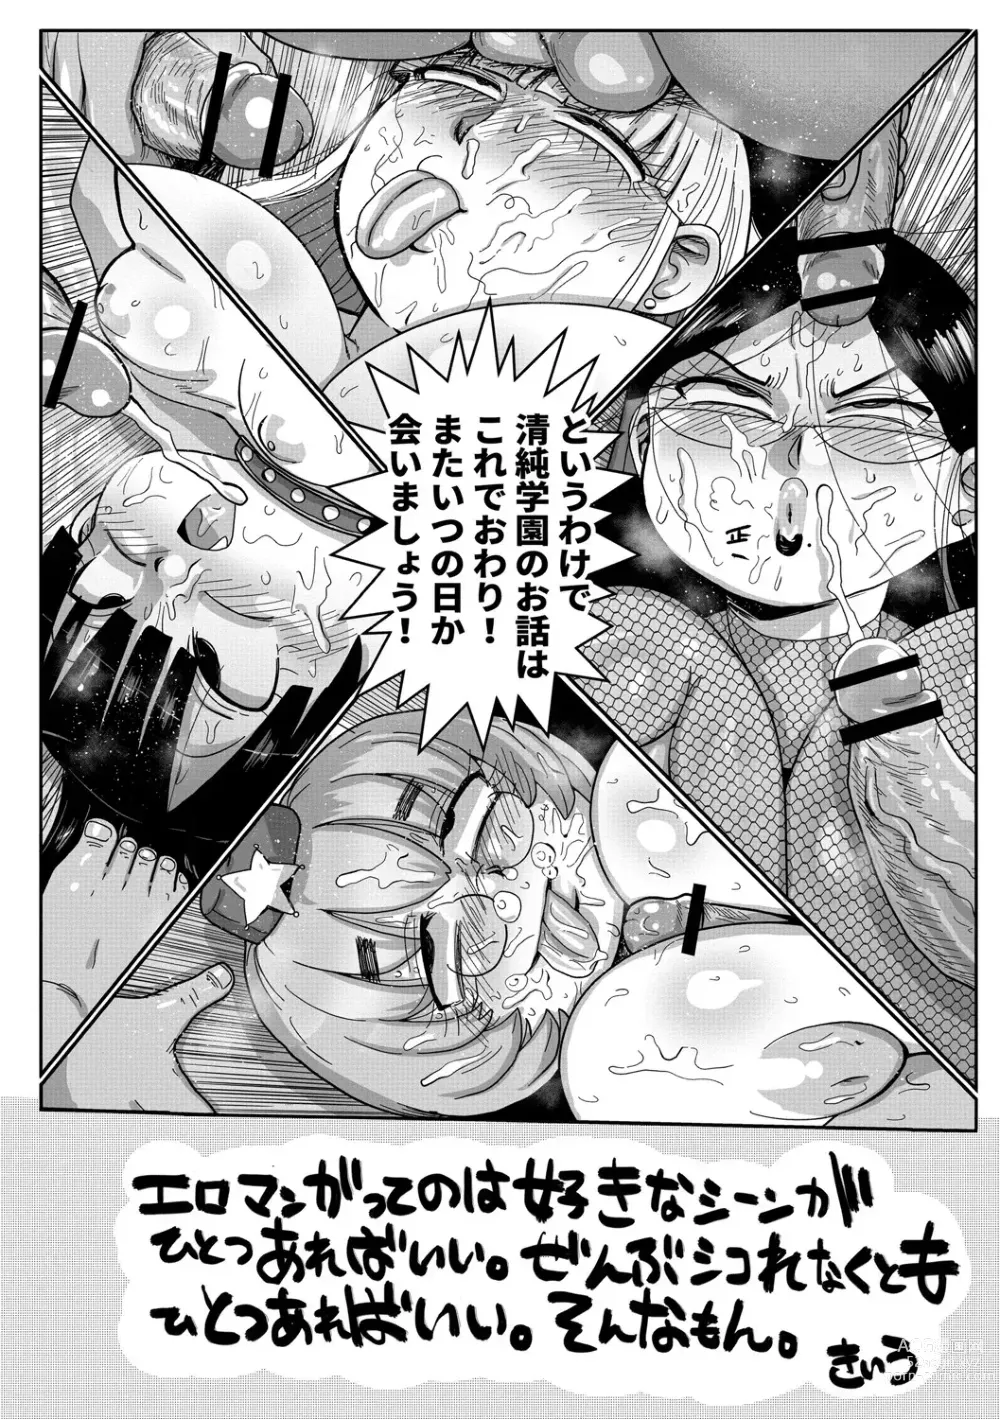 Page 214 of manga 가자! 청순학원 에로 만화부